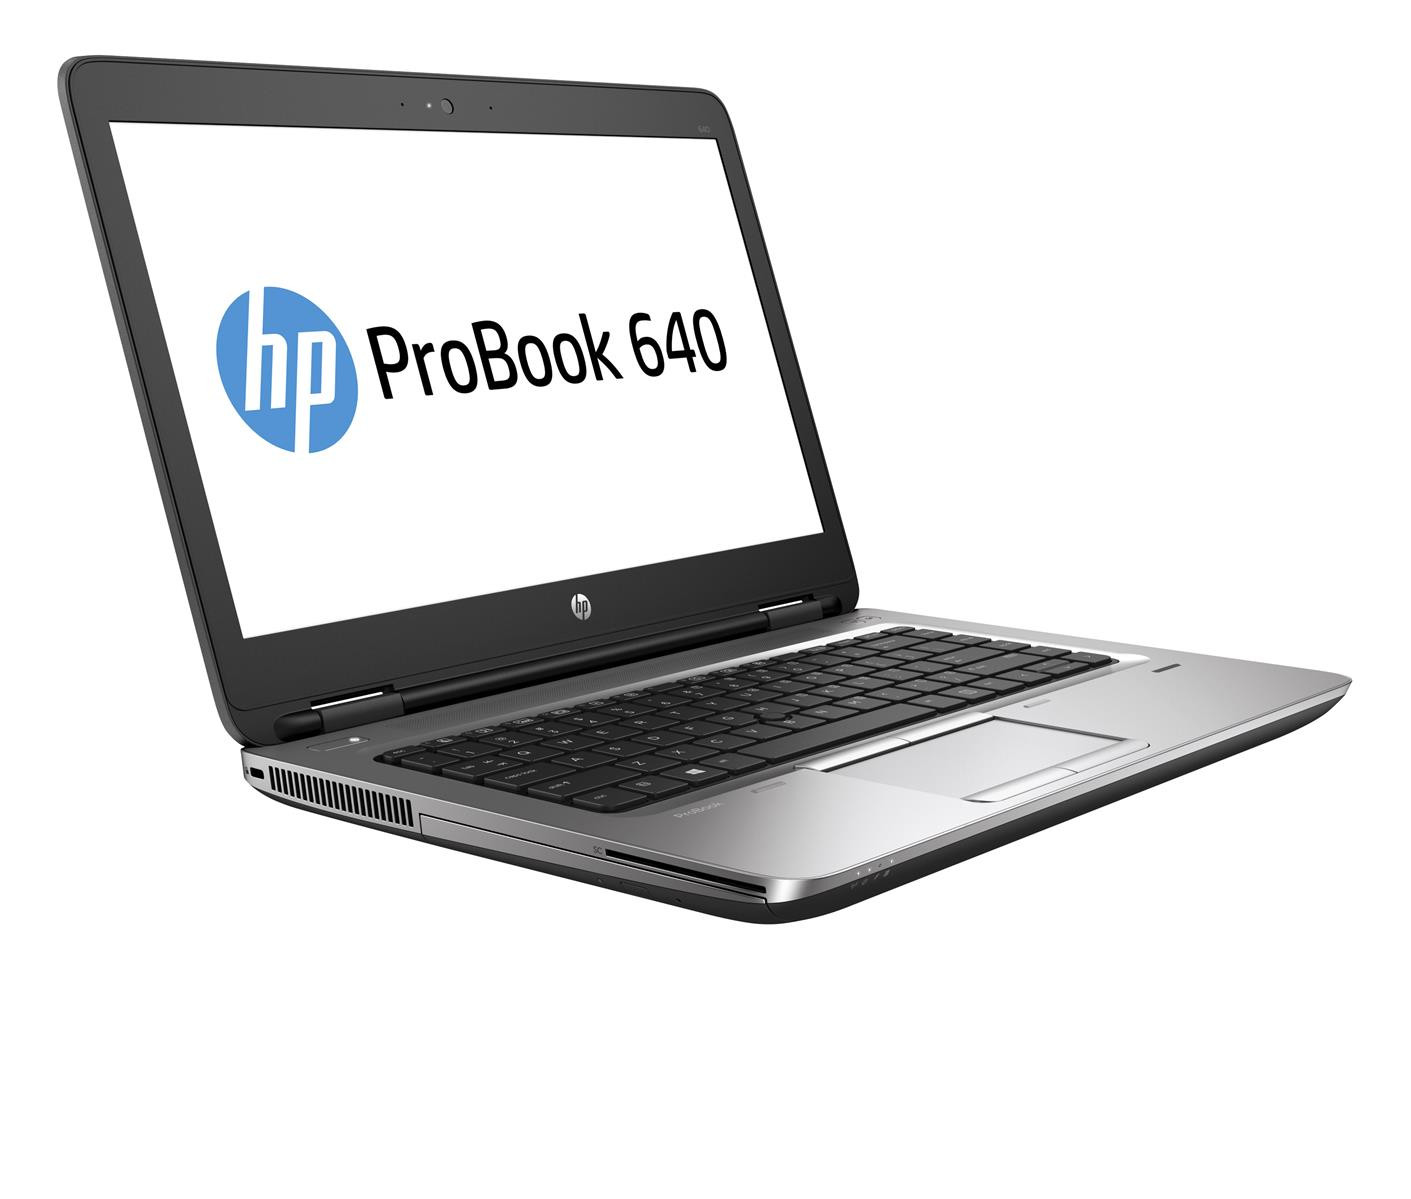 HP ProBook 640 G2 Intel i5-6200U 2.3GHz 8GB RAM 128GB SSD DVD Win 10 Pro